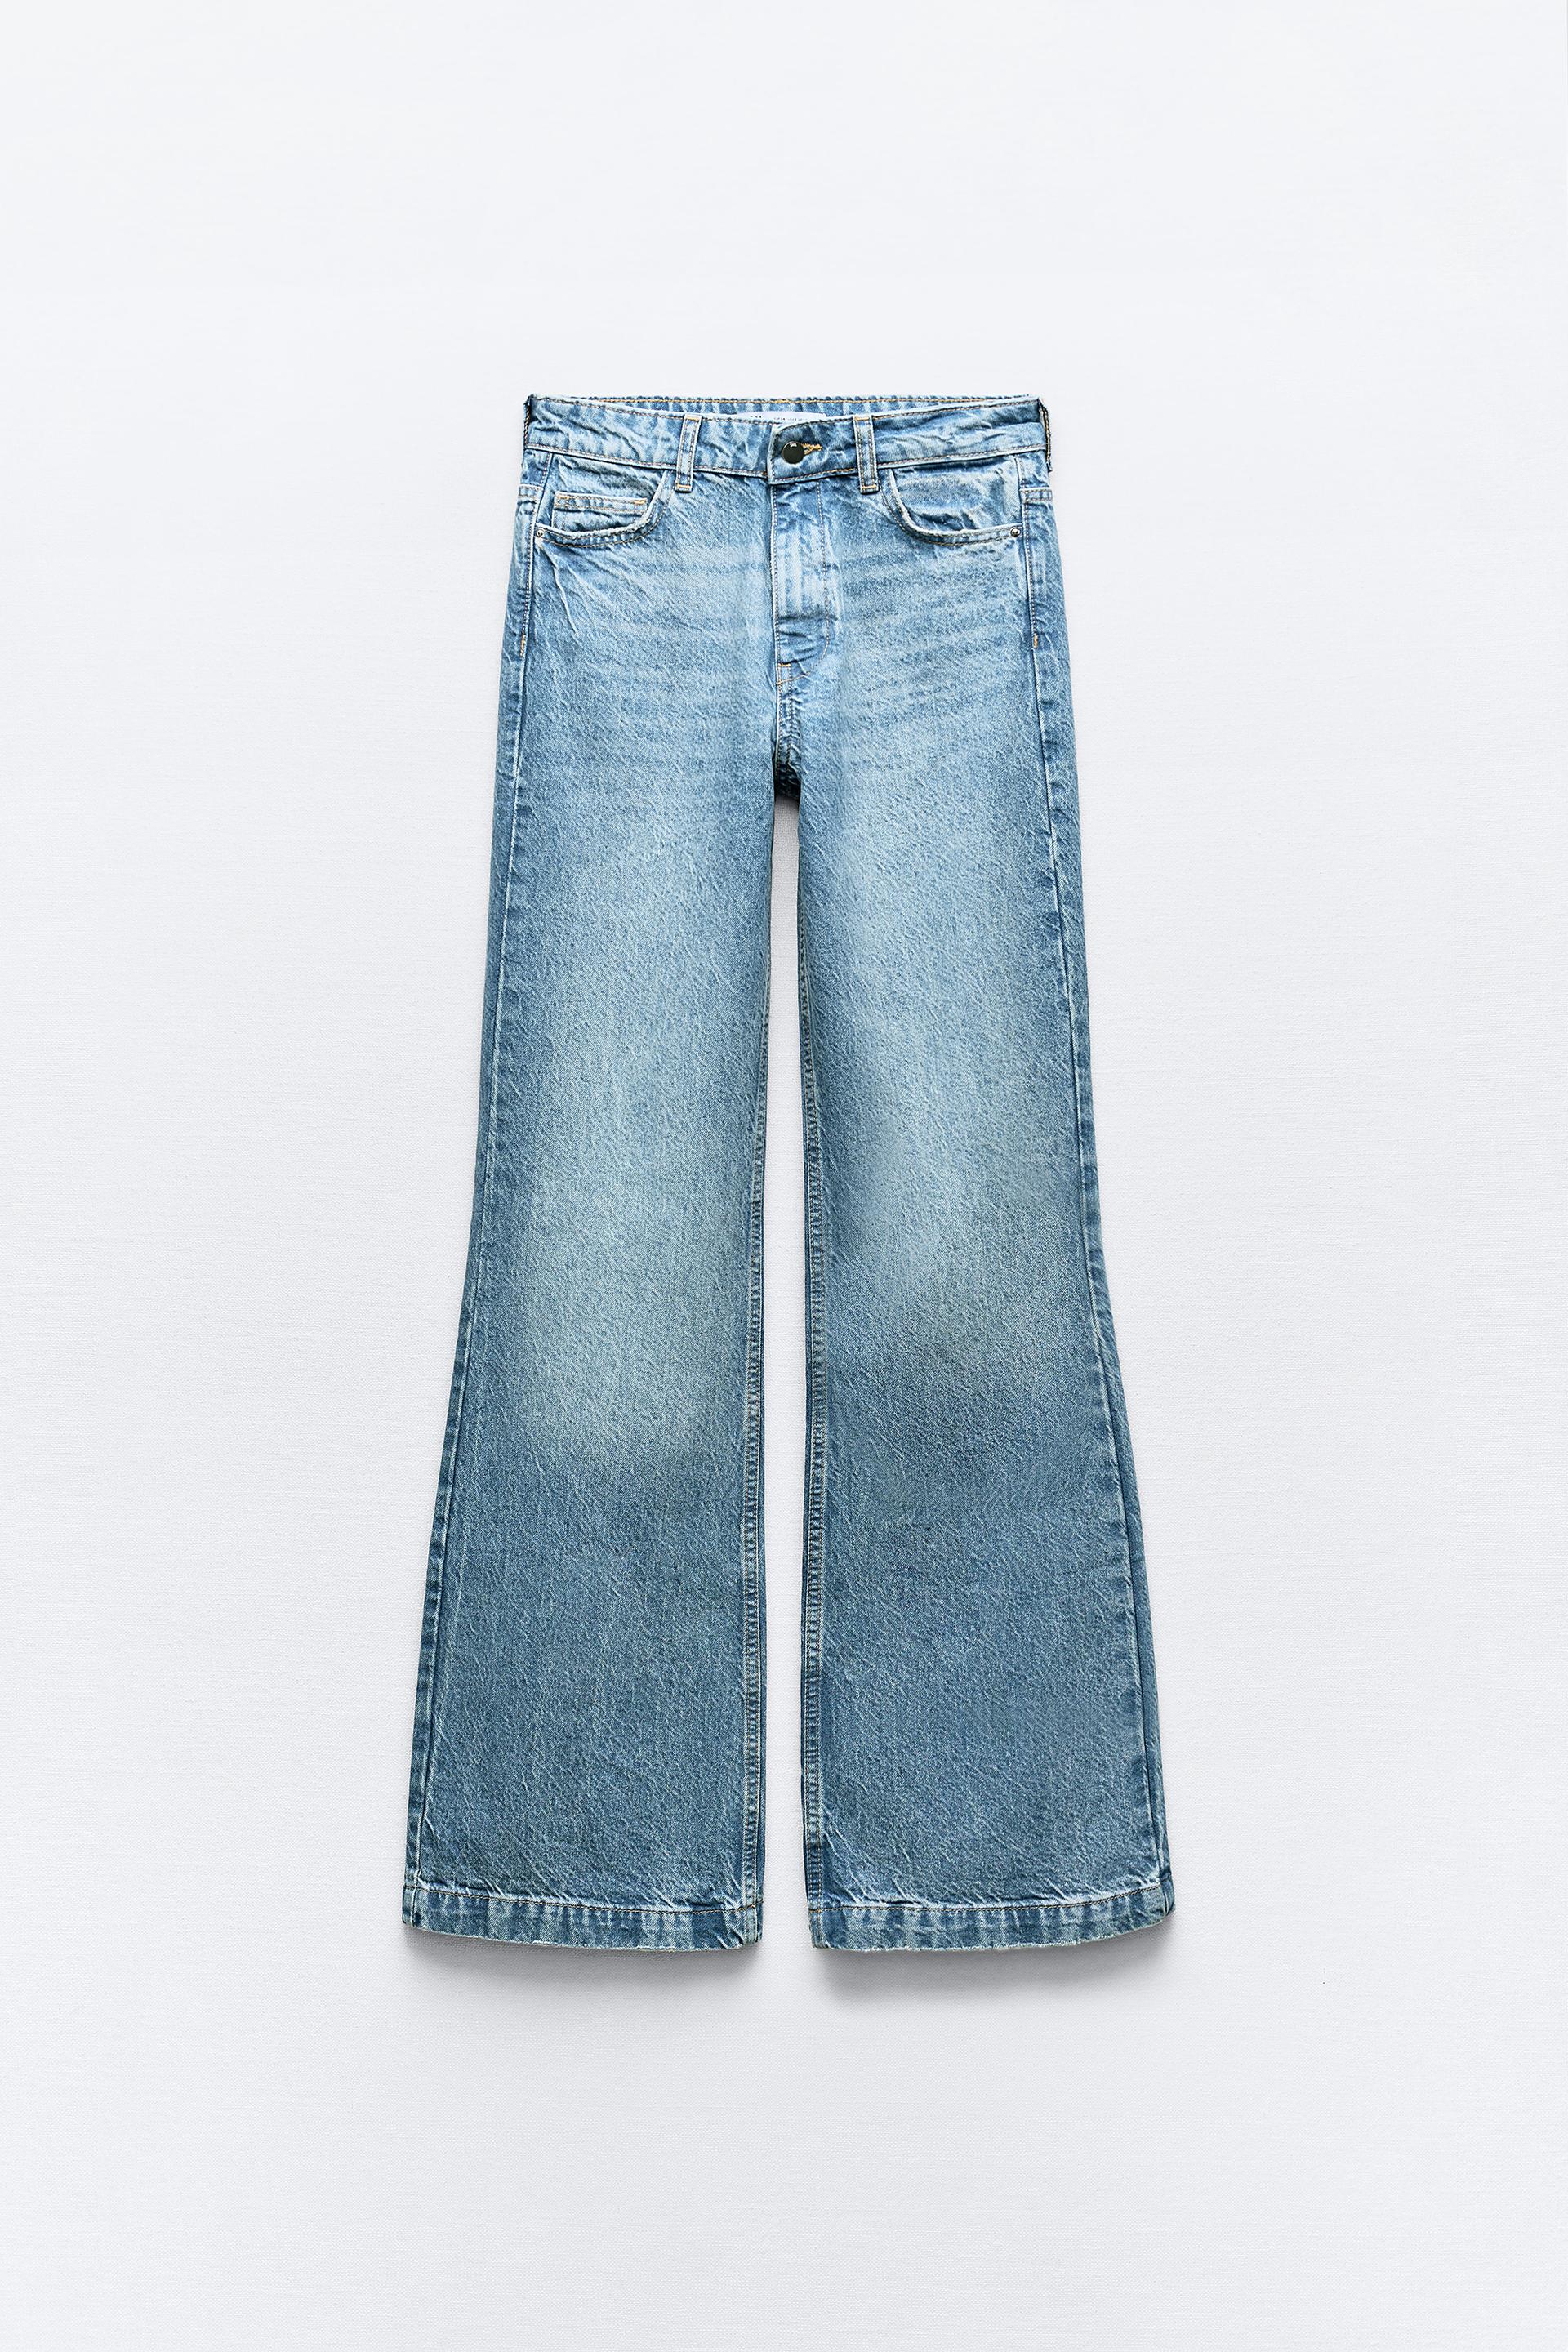 Jeans de cintura média e perna em flare, Urbanic